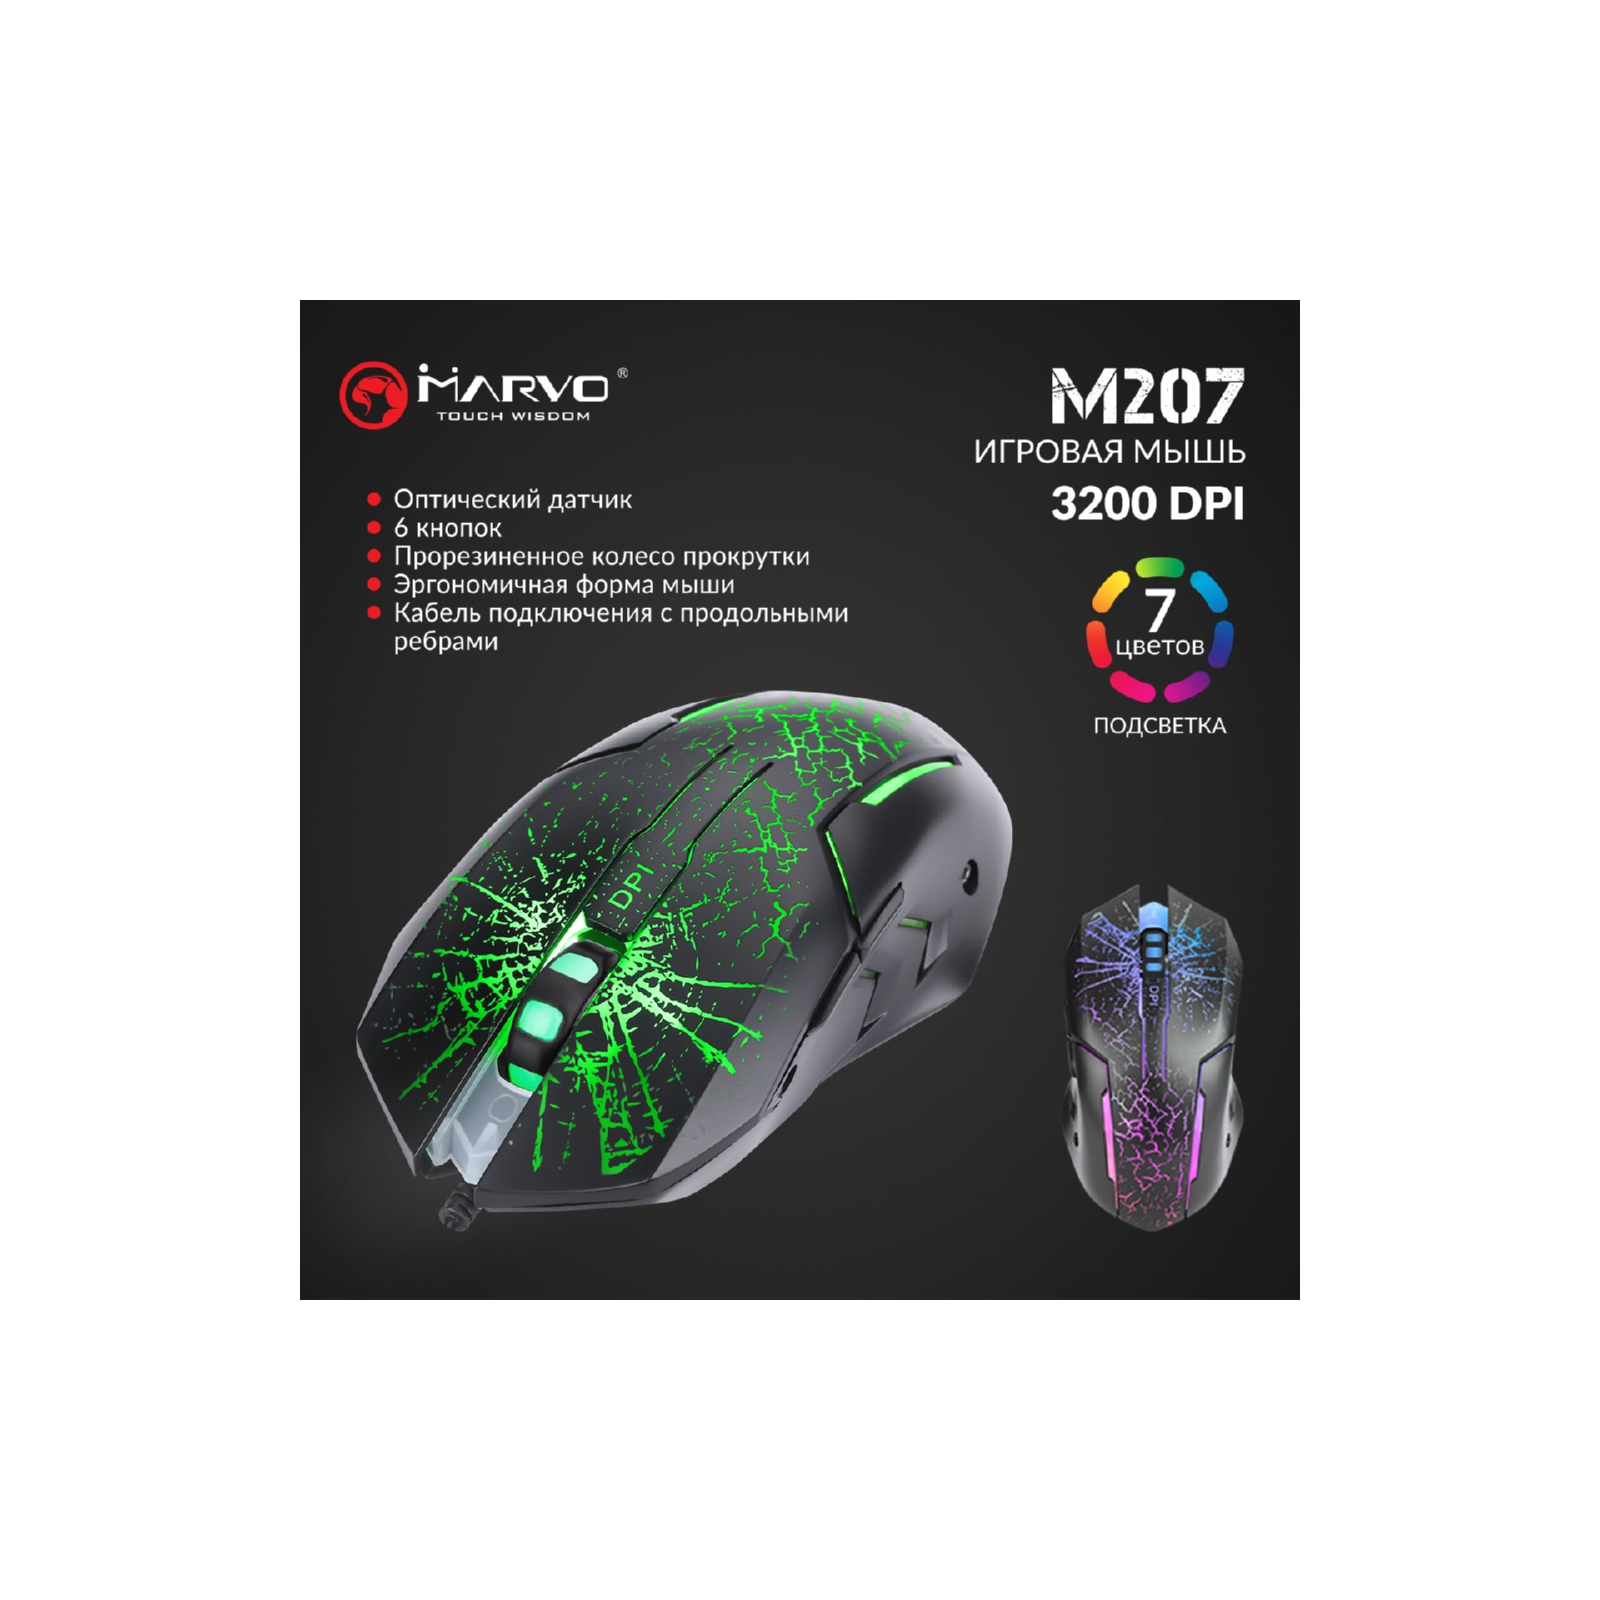 Мышка Marvo M207 LED USB Black (M207) изображение 5